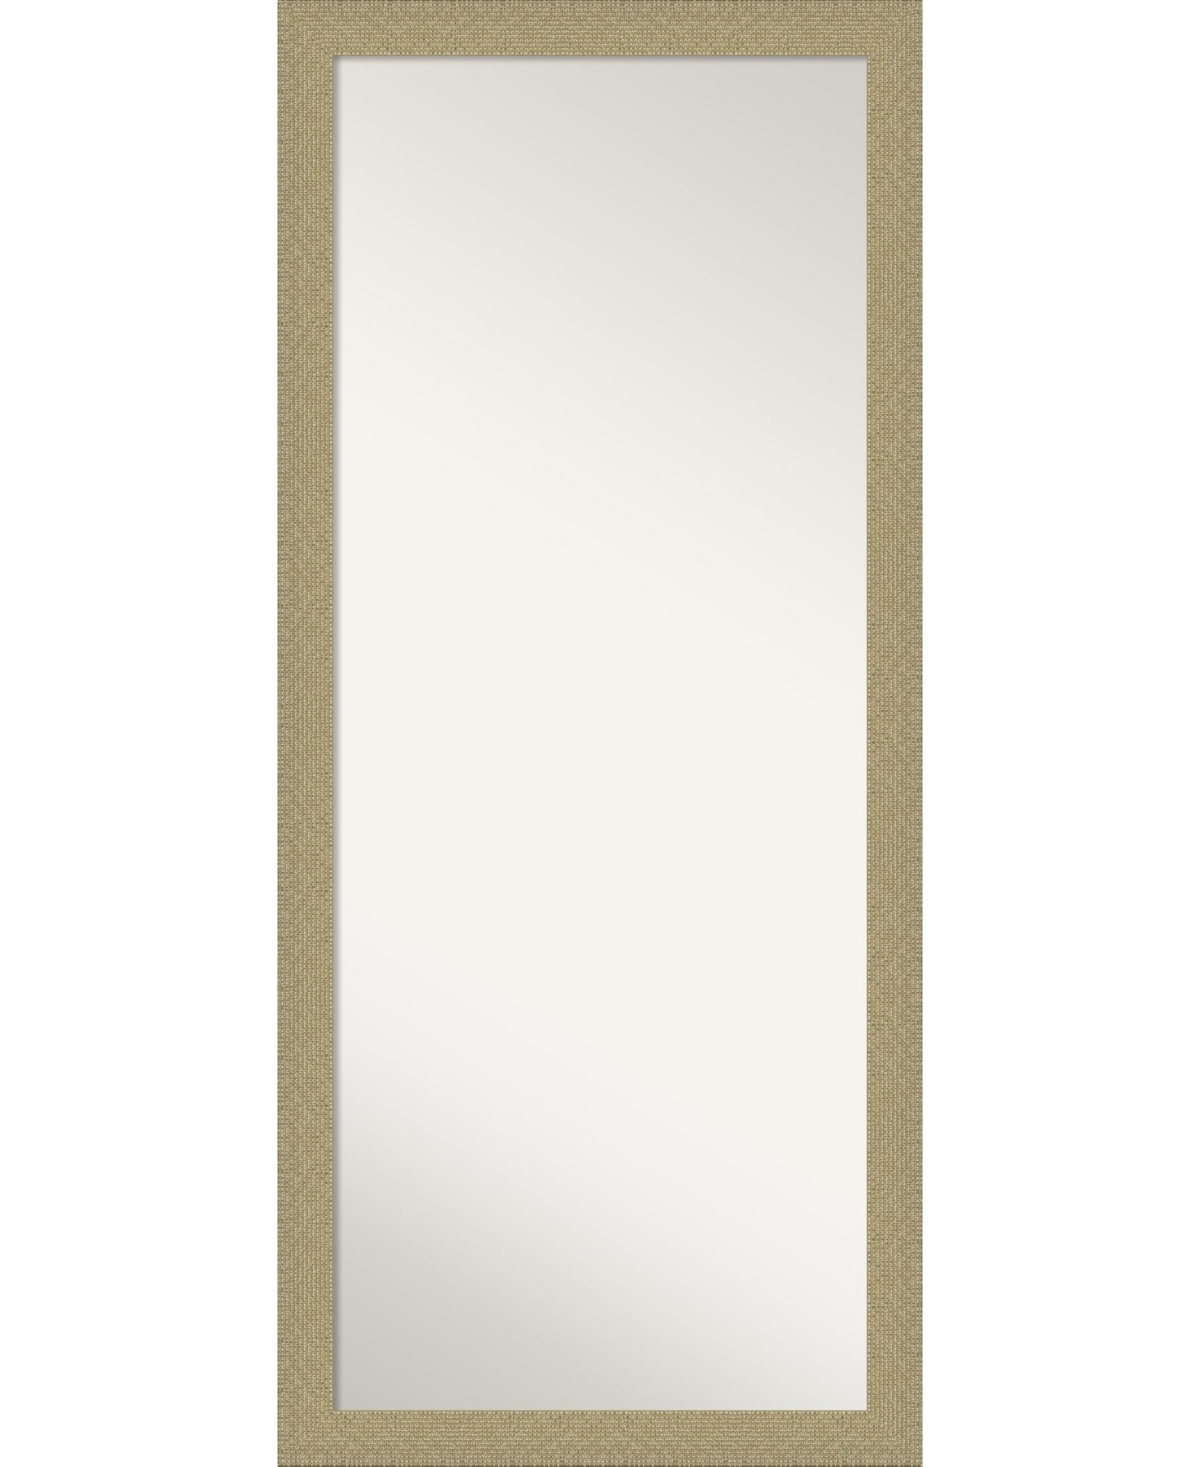 Mosaic Gold-tone Framed Floor/Leaner Full Length Mirror, 28.25" x 64.25" - Gold